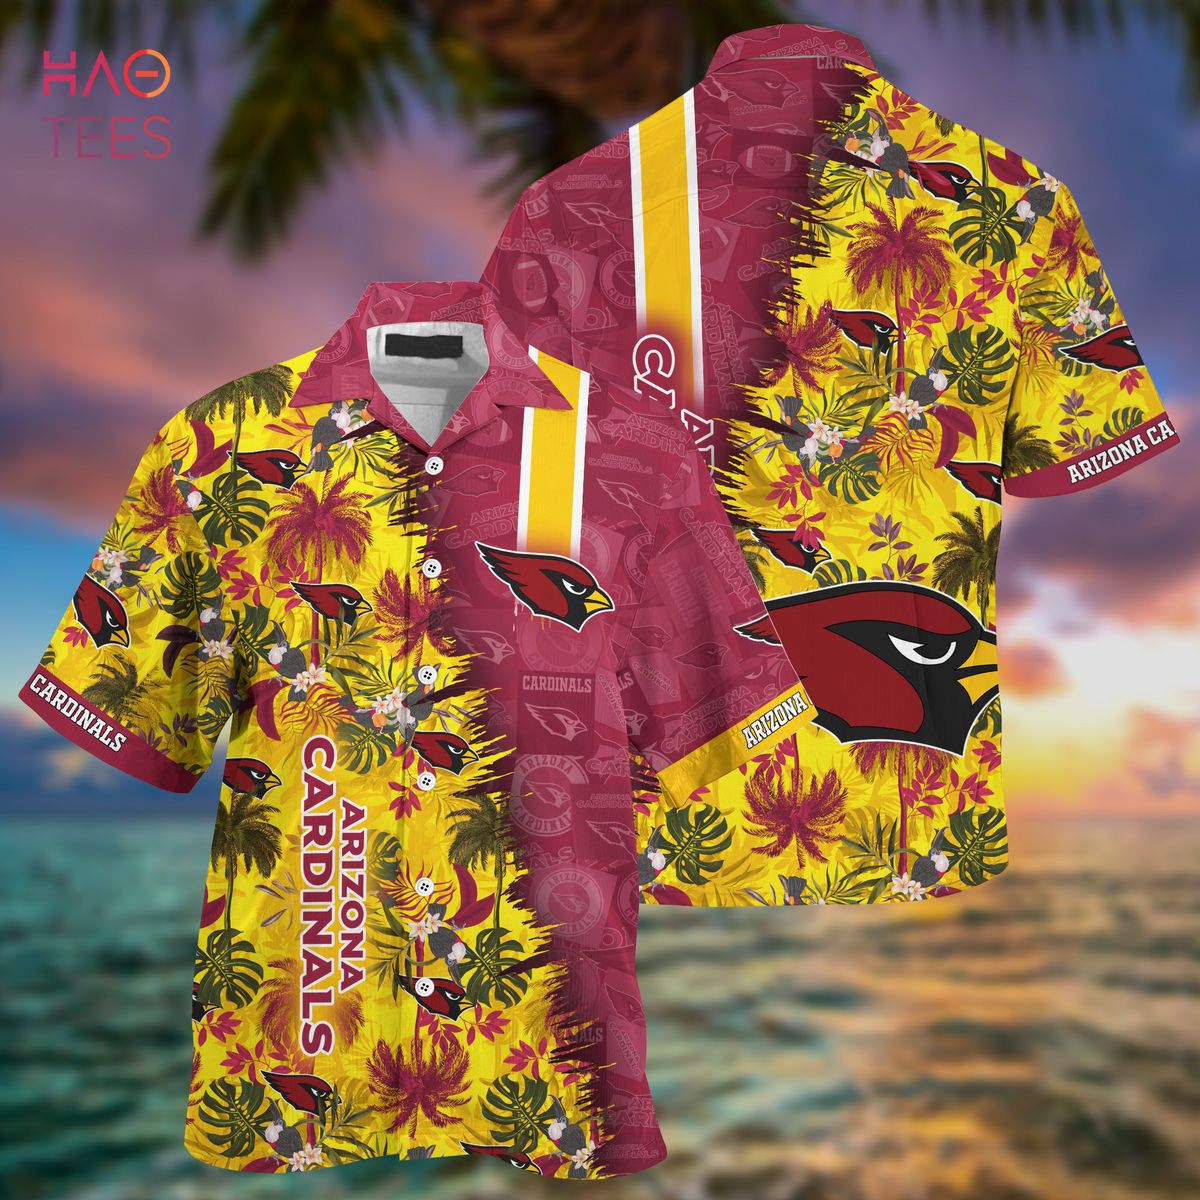 Personalized Arizona Cardinals NFL Summer Hawaiian Shirt And Shorts